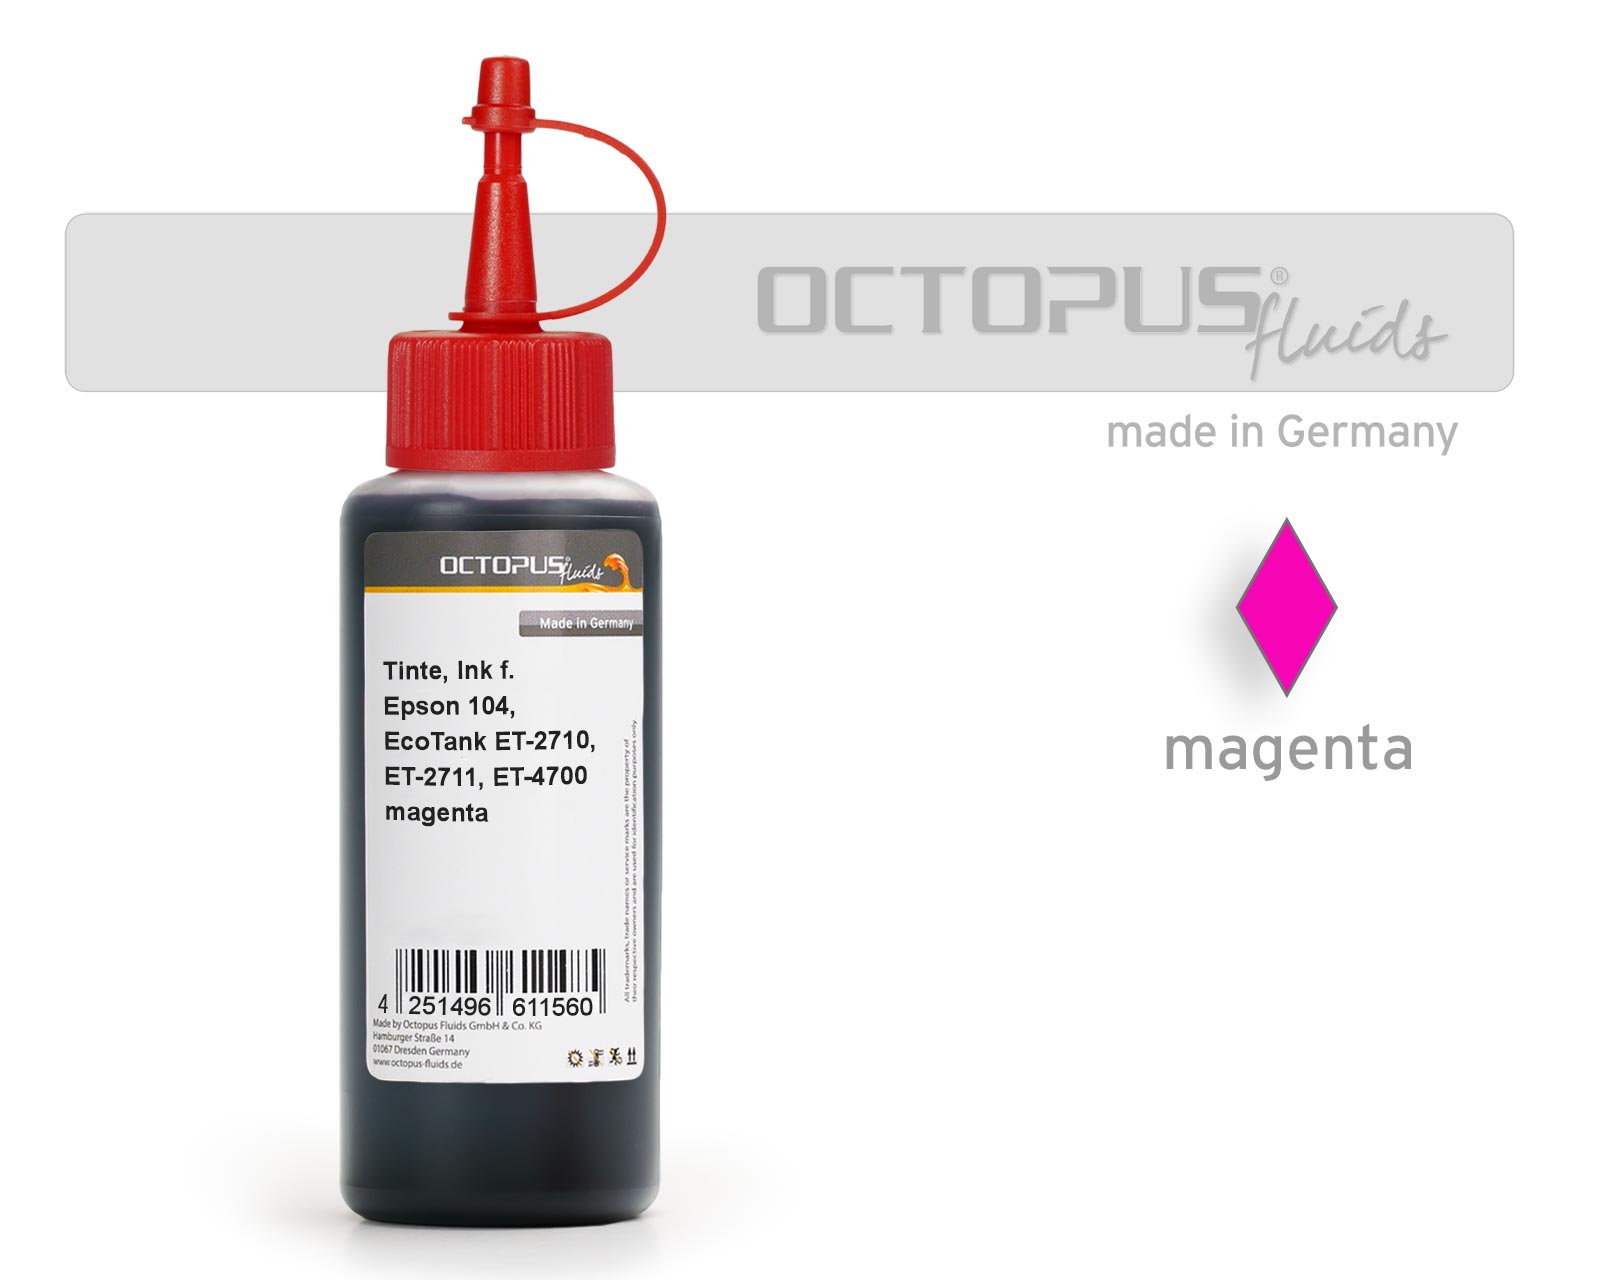 Refill ink for Epson 104, EcoTank ET-2710, ET-2711, ET-4700 magenta